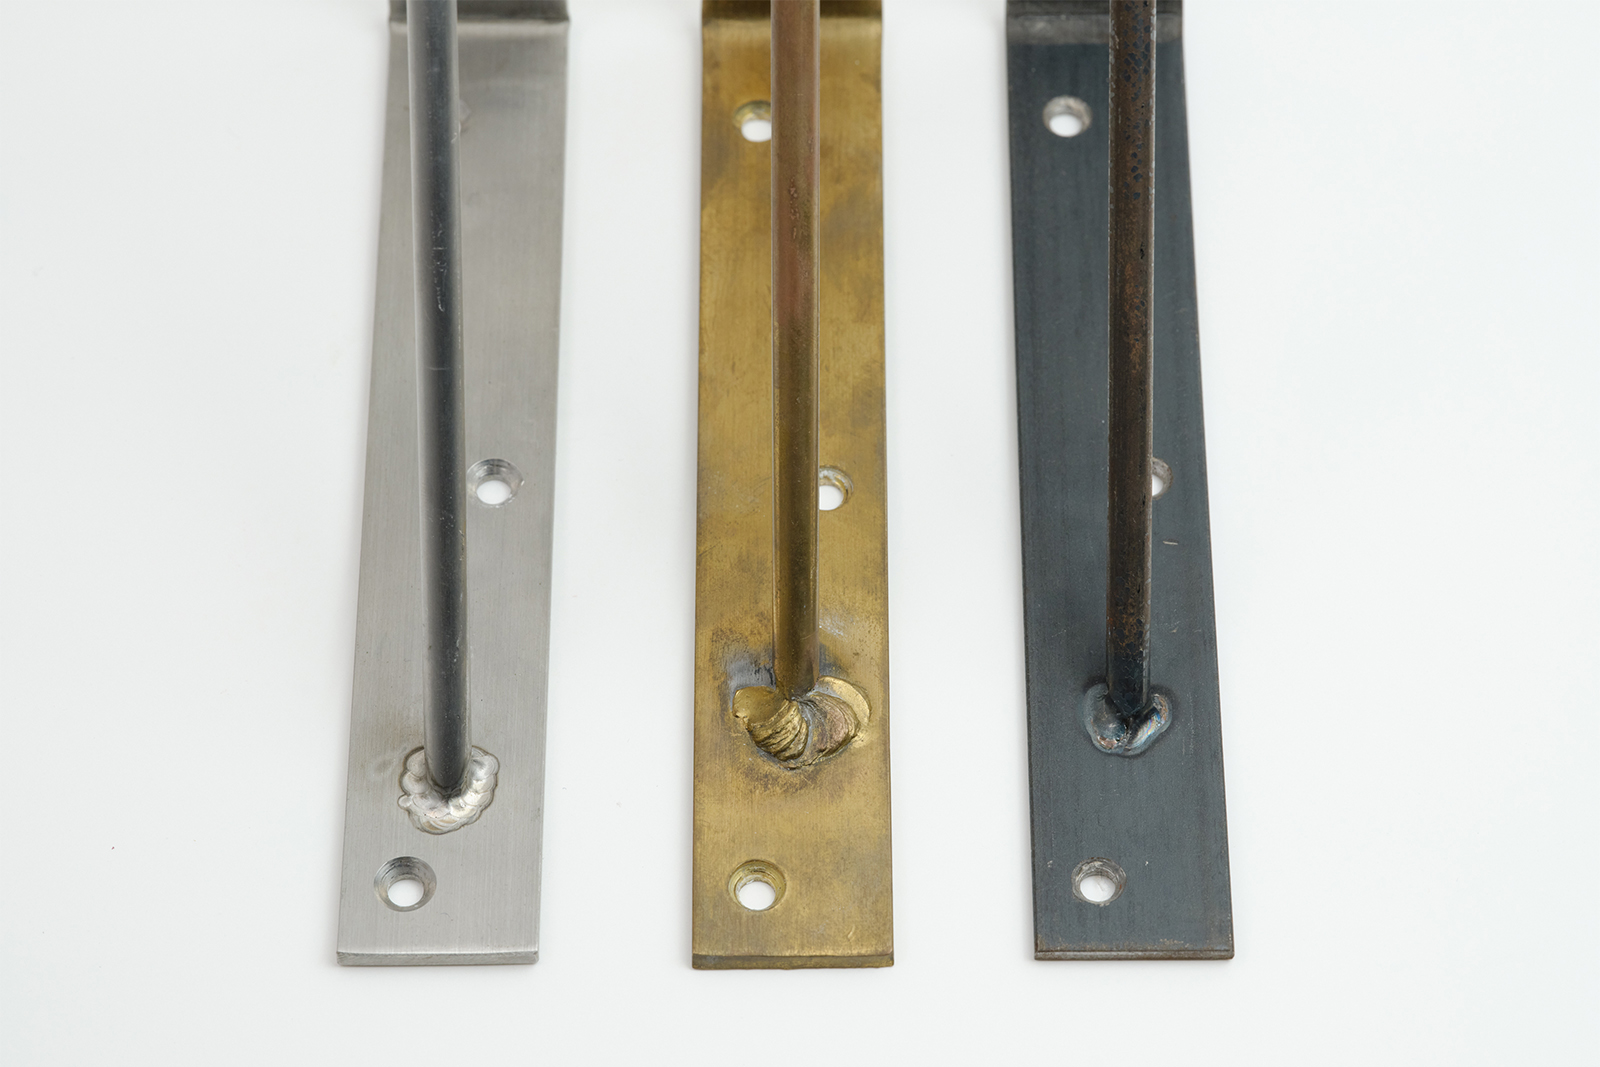 棚受け金物 真鍮 D200 PS-BK001-03-G141 素材は全部で3種類。左から、ステンレス・真鍮・鉄